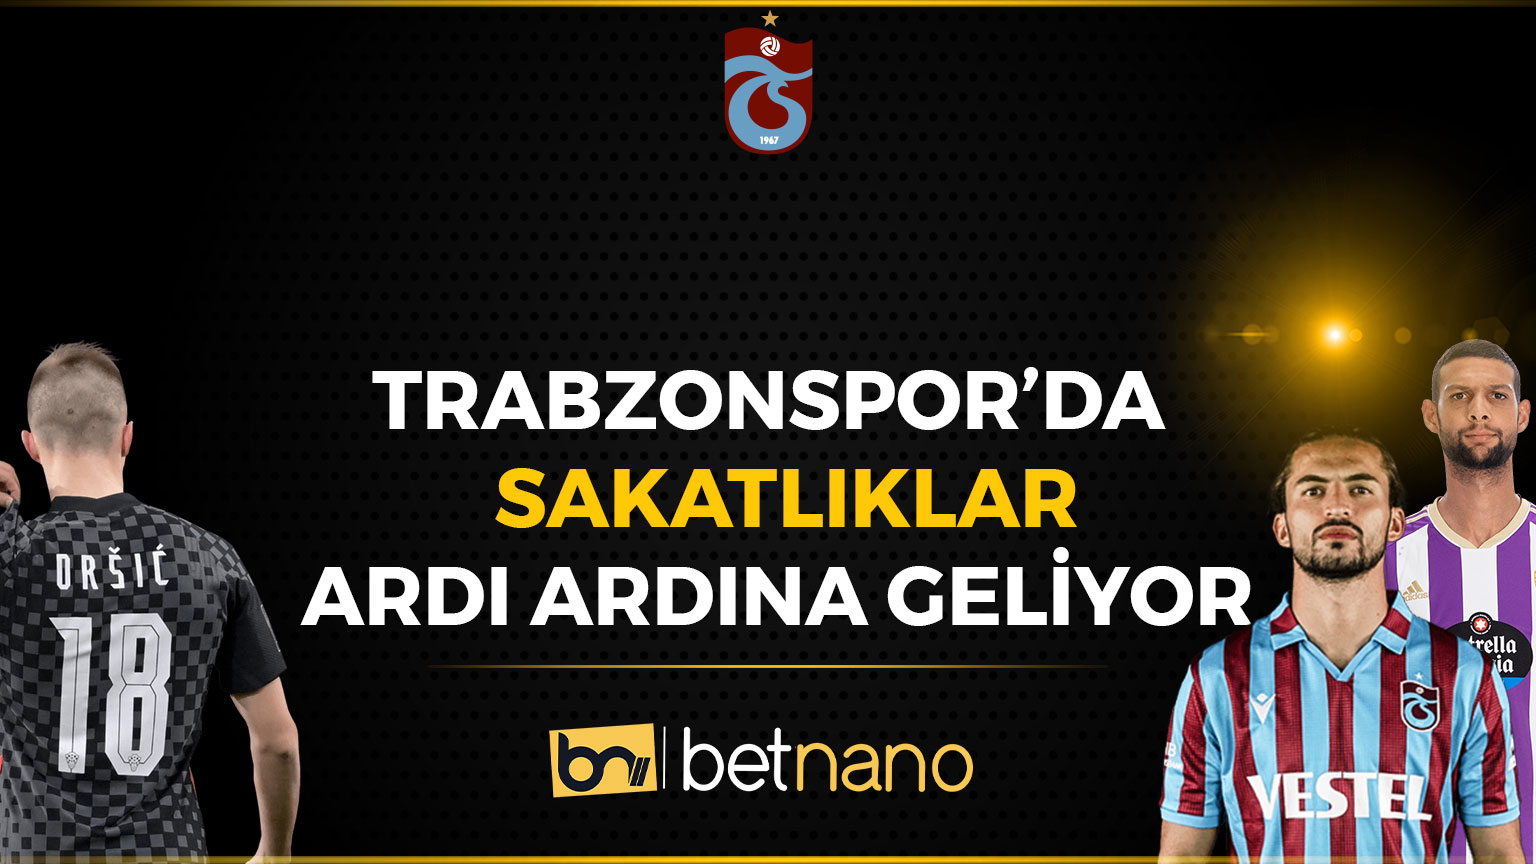 Trabzonspor’da Sakatlıklar Ardı Ardına Geliyor!